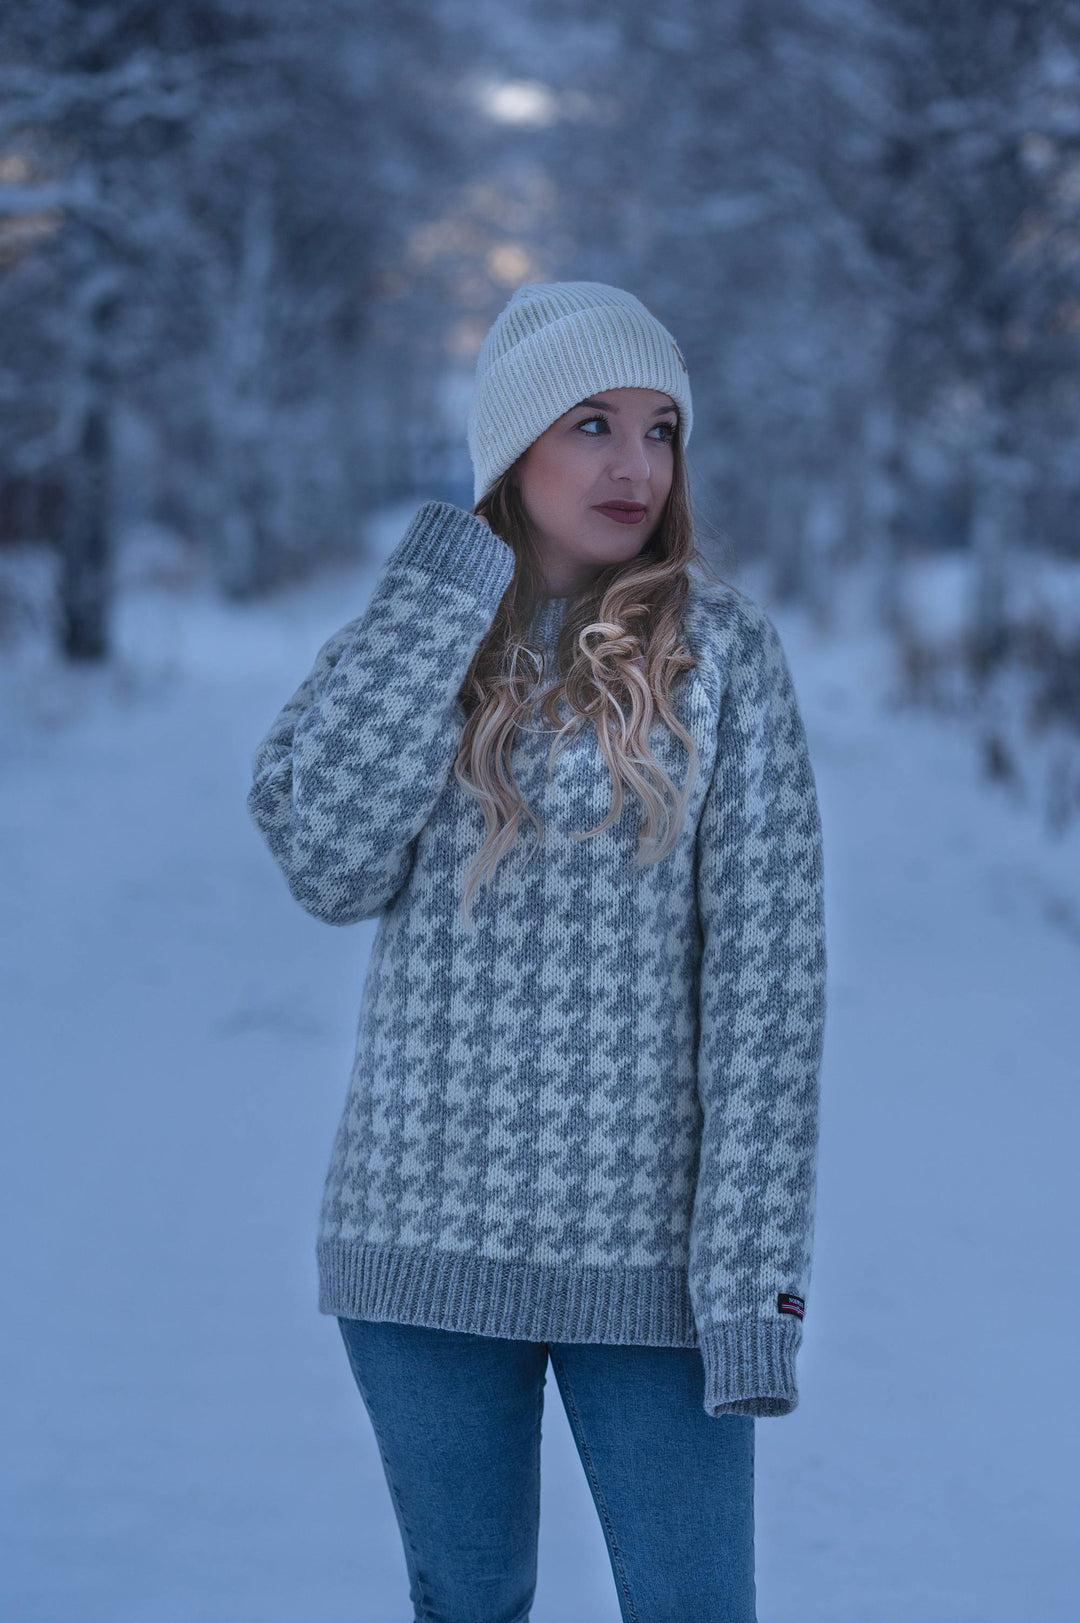 Norwool Islandsk sweater 100% ren uld i twistyarn 3GG